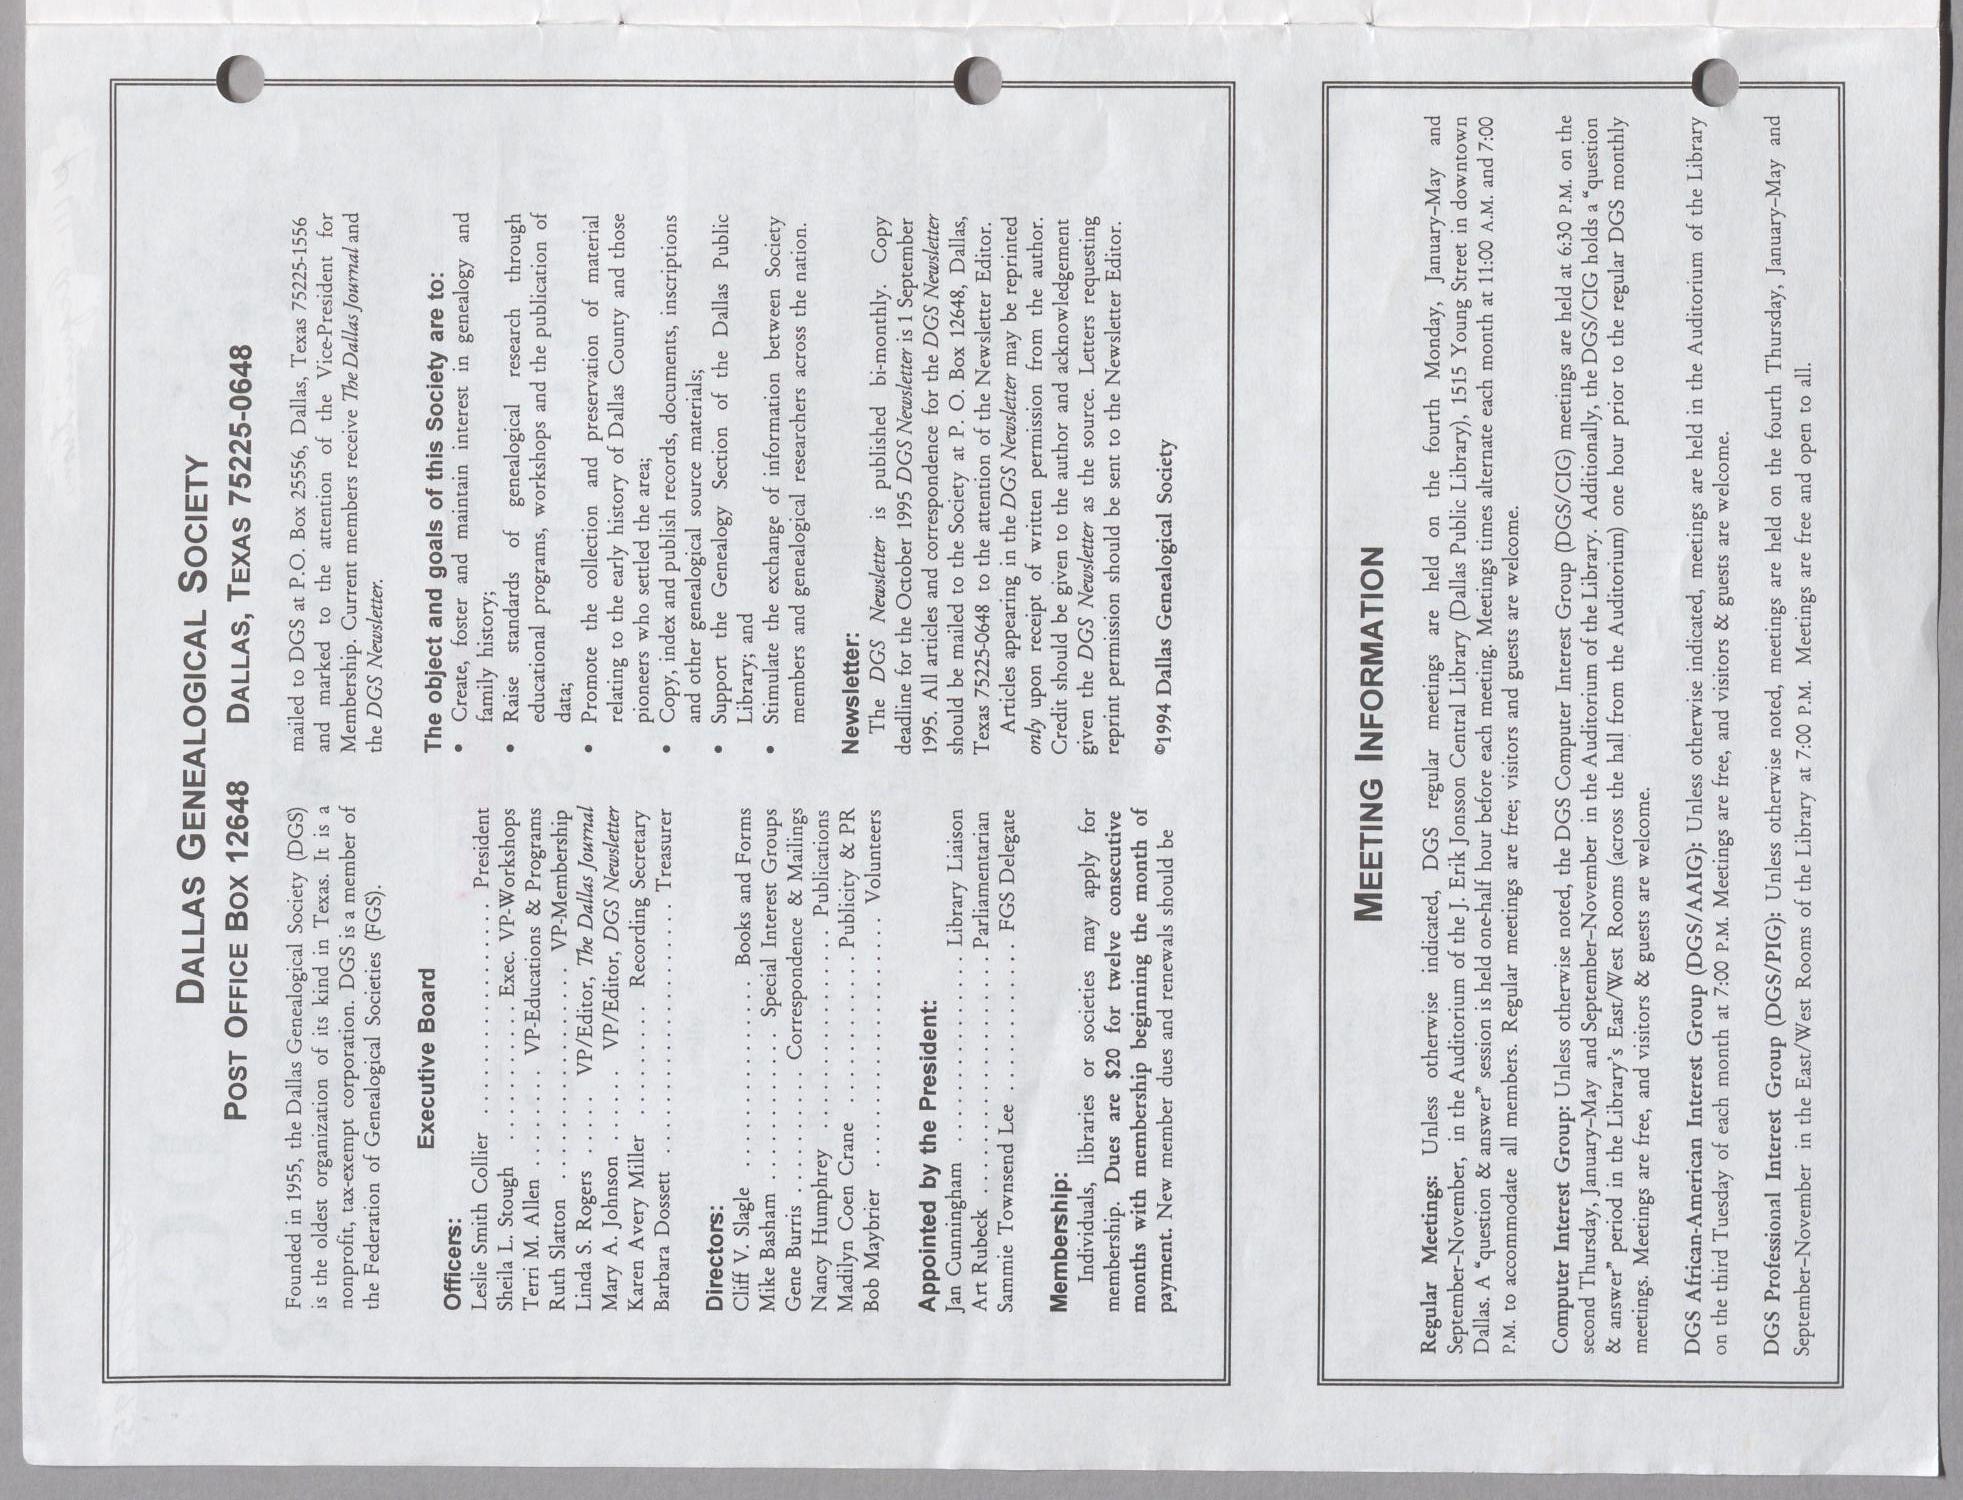 DGS Newsletter, Volume 19, Number 5, September 1995
                                                
                                                    98
                                                